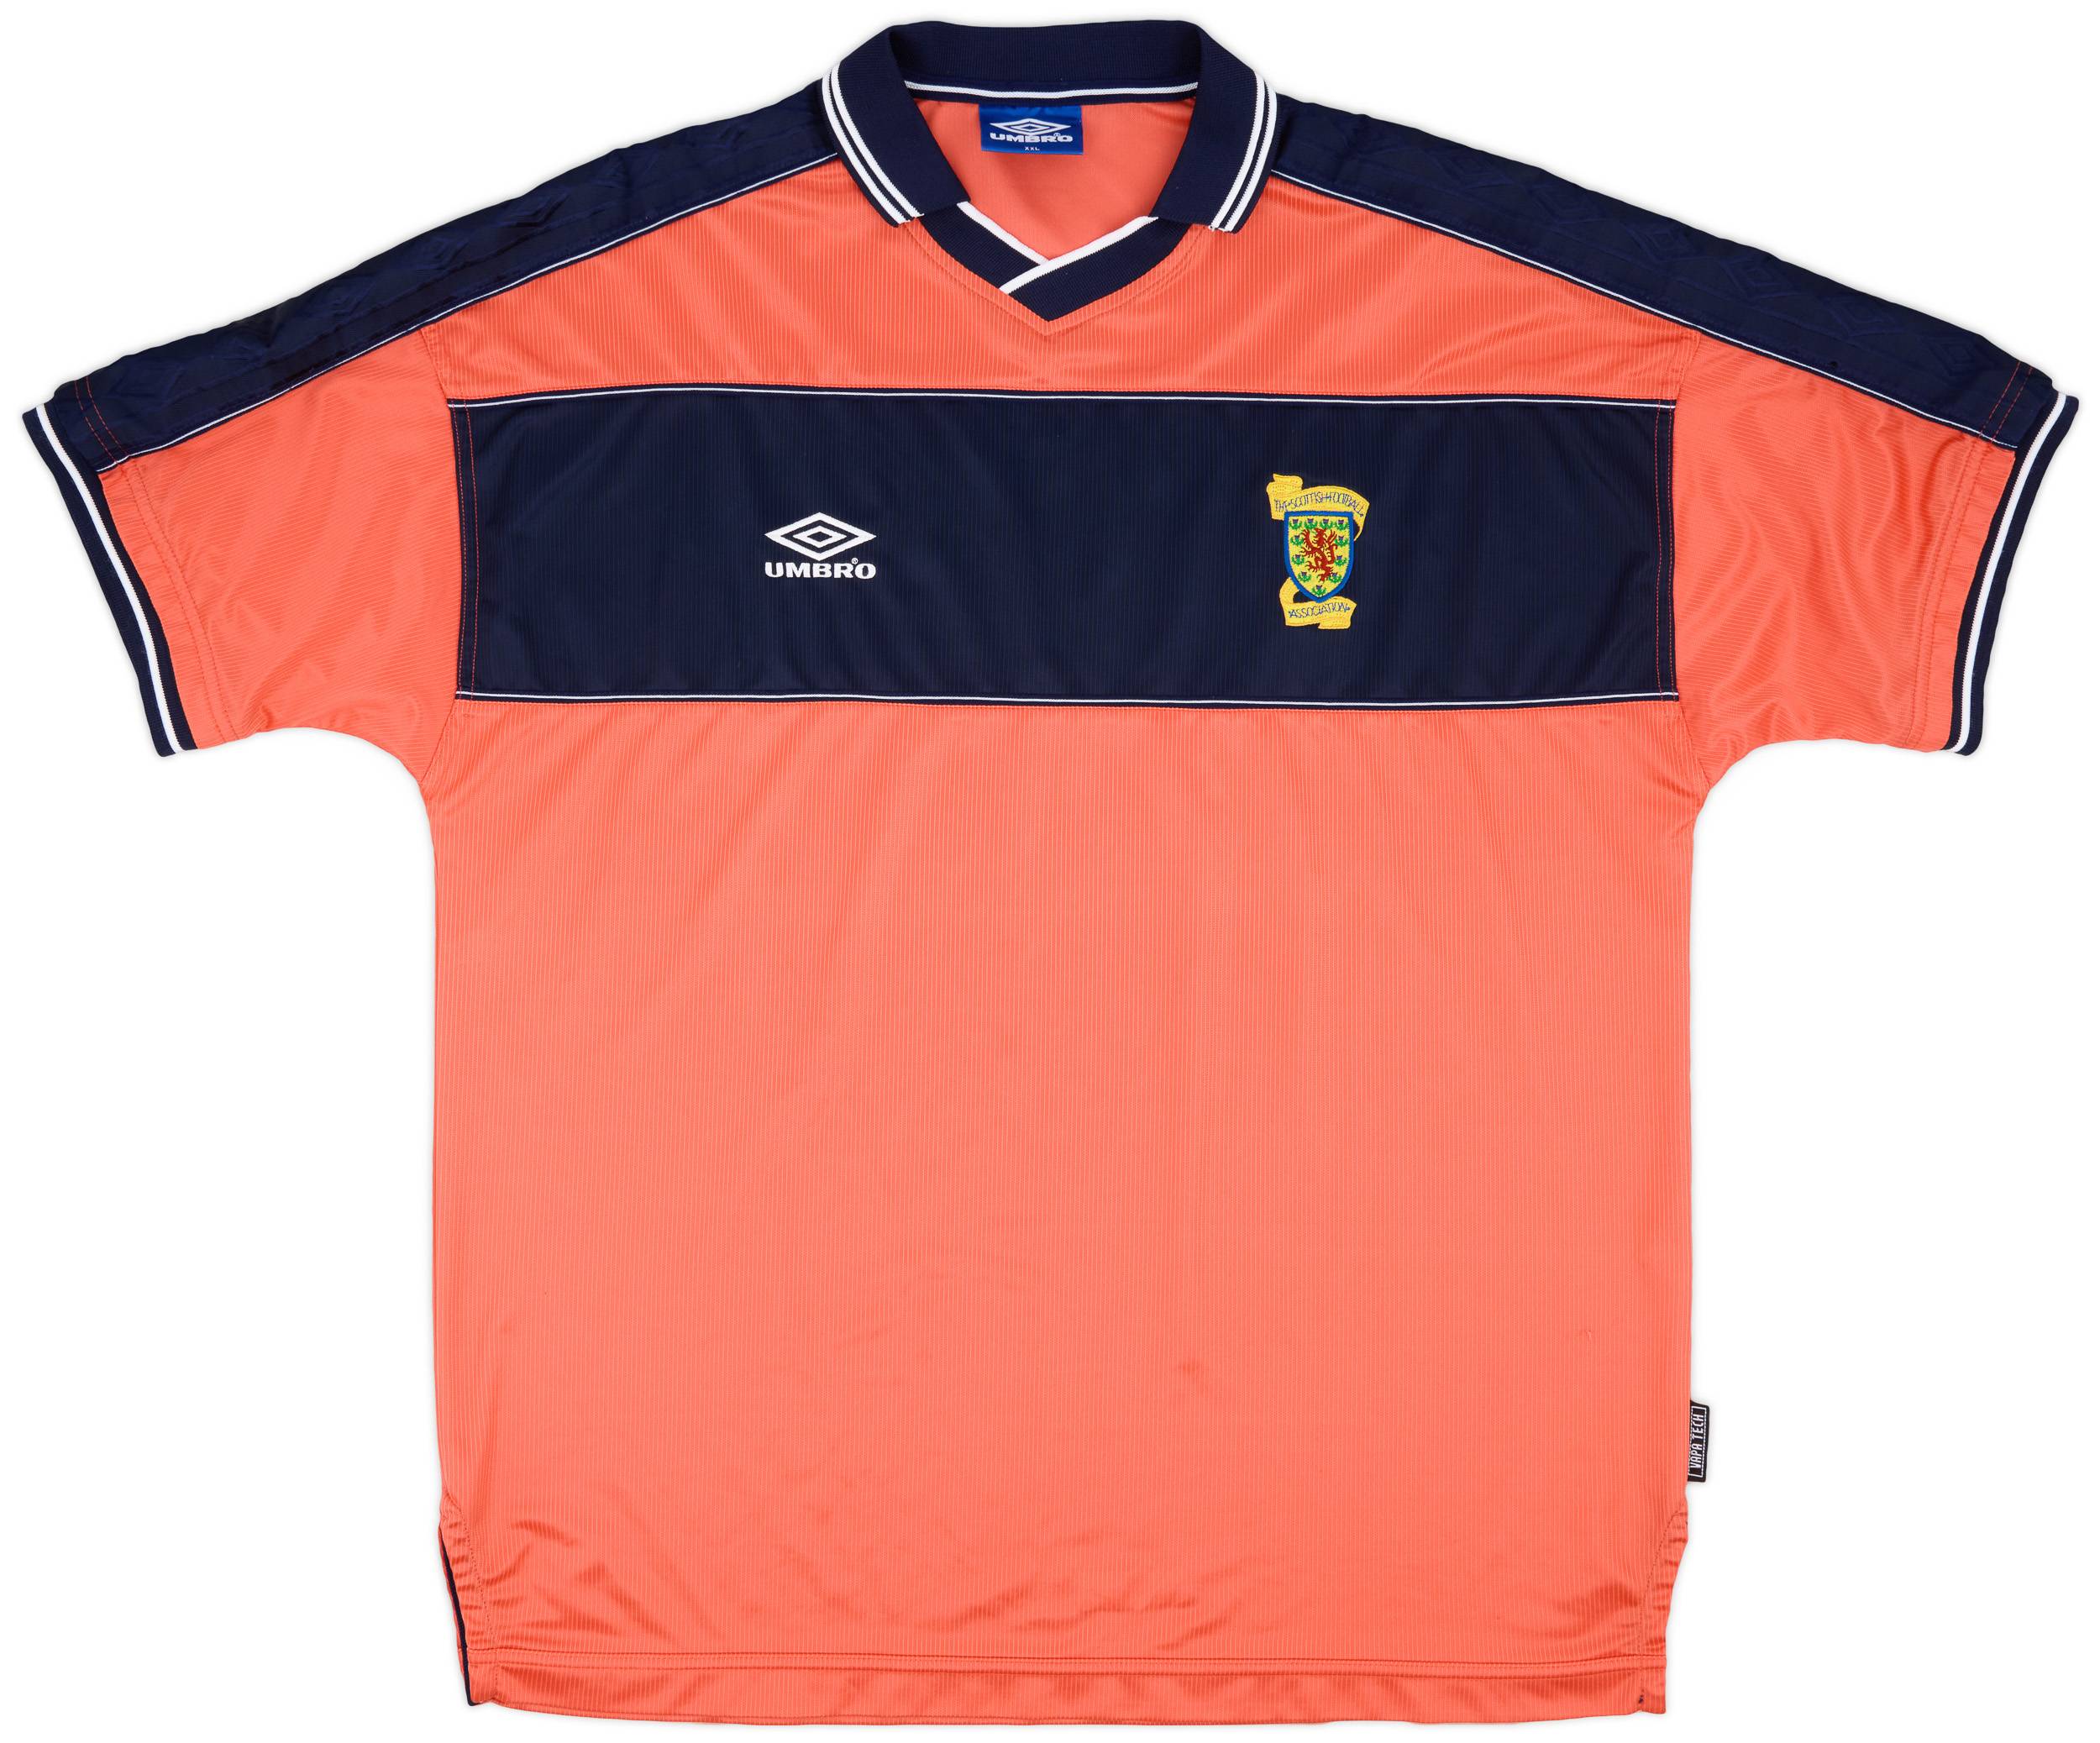 1999-00 Scotland Away Shirt - 9/10 - (XXL)